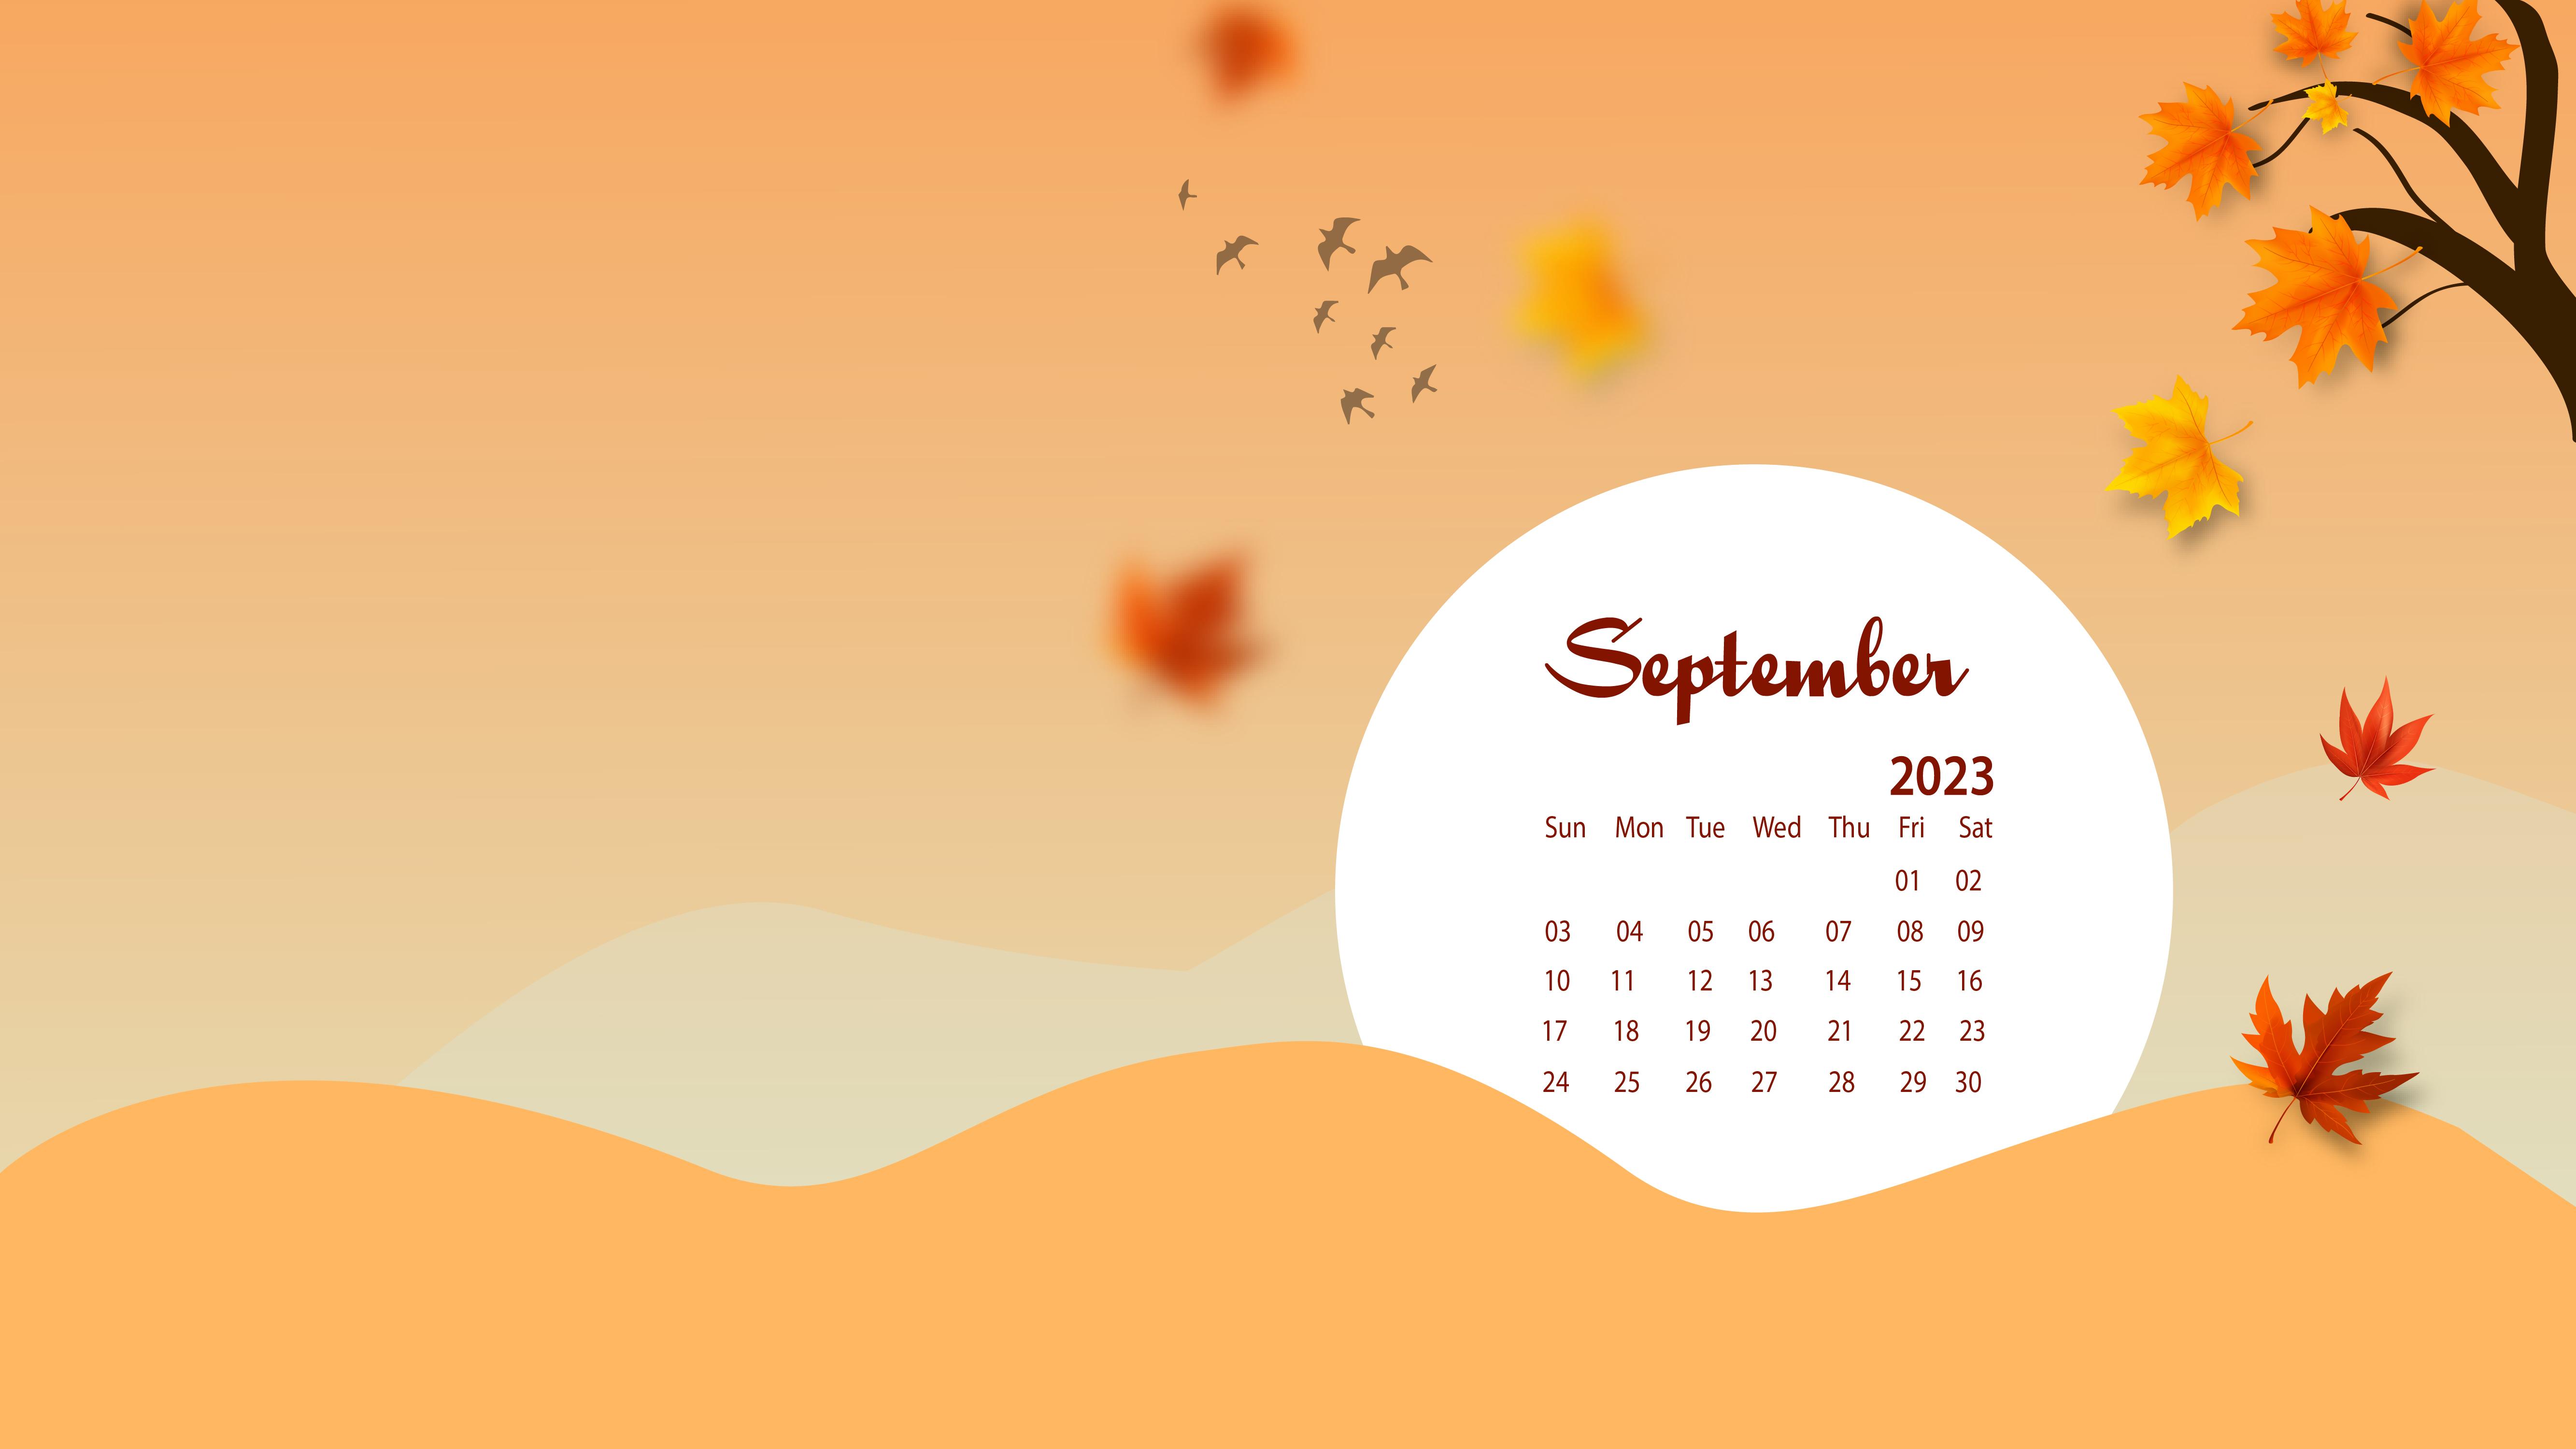 September Desktop Wallpaper Calendar Calendarlabs